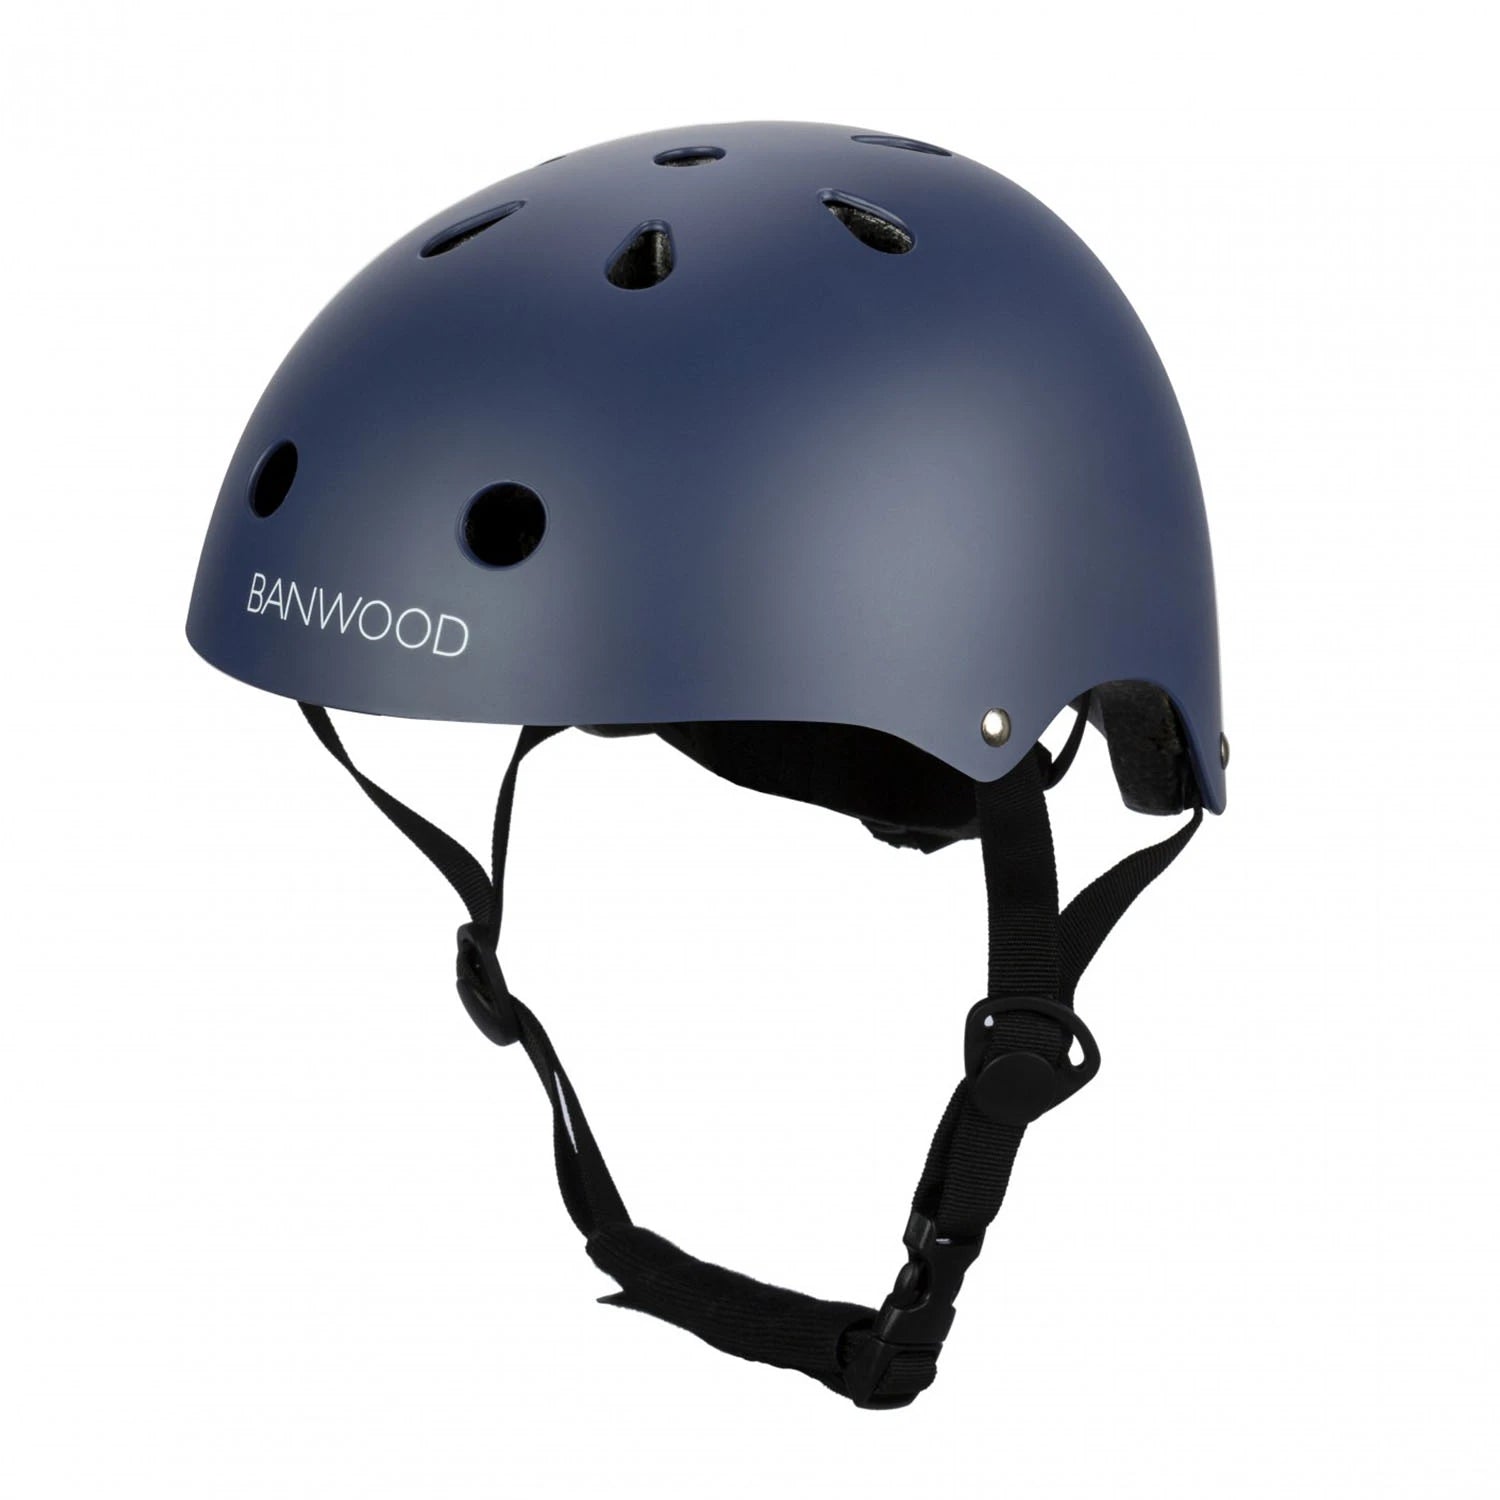 An image of Banwood Buy Banwood Classic Kids Bike Helmet – Safe & Stylish Navy